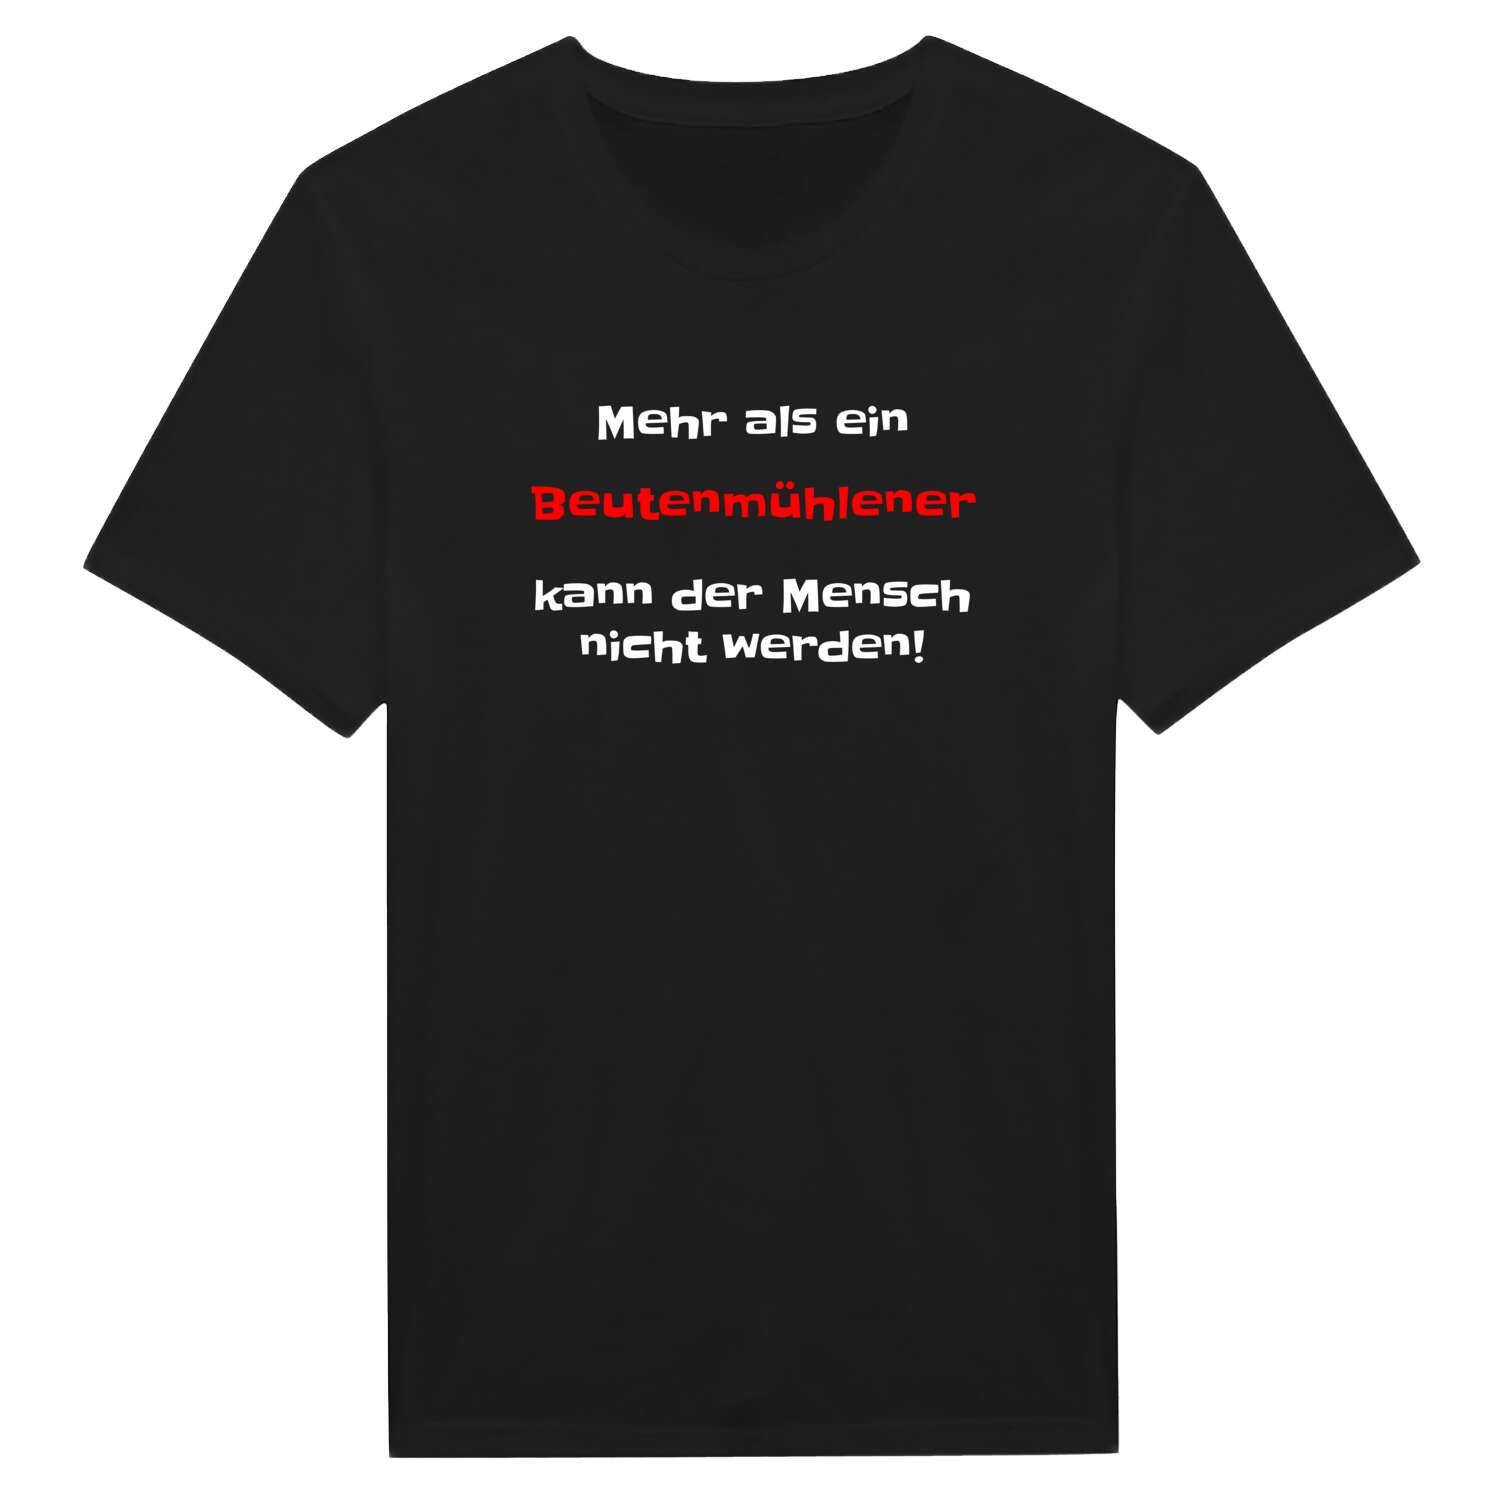 Beutenmühle T-Shirt »Mehr als ein«